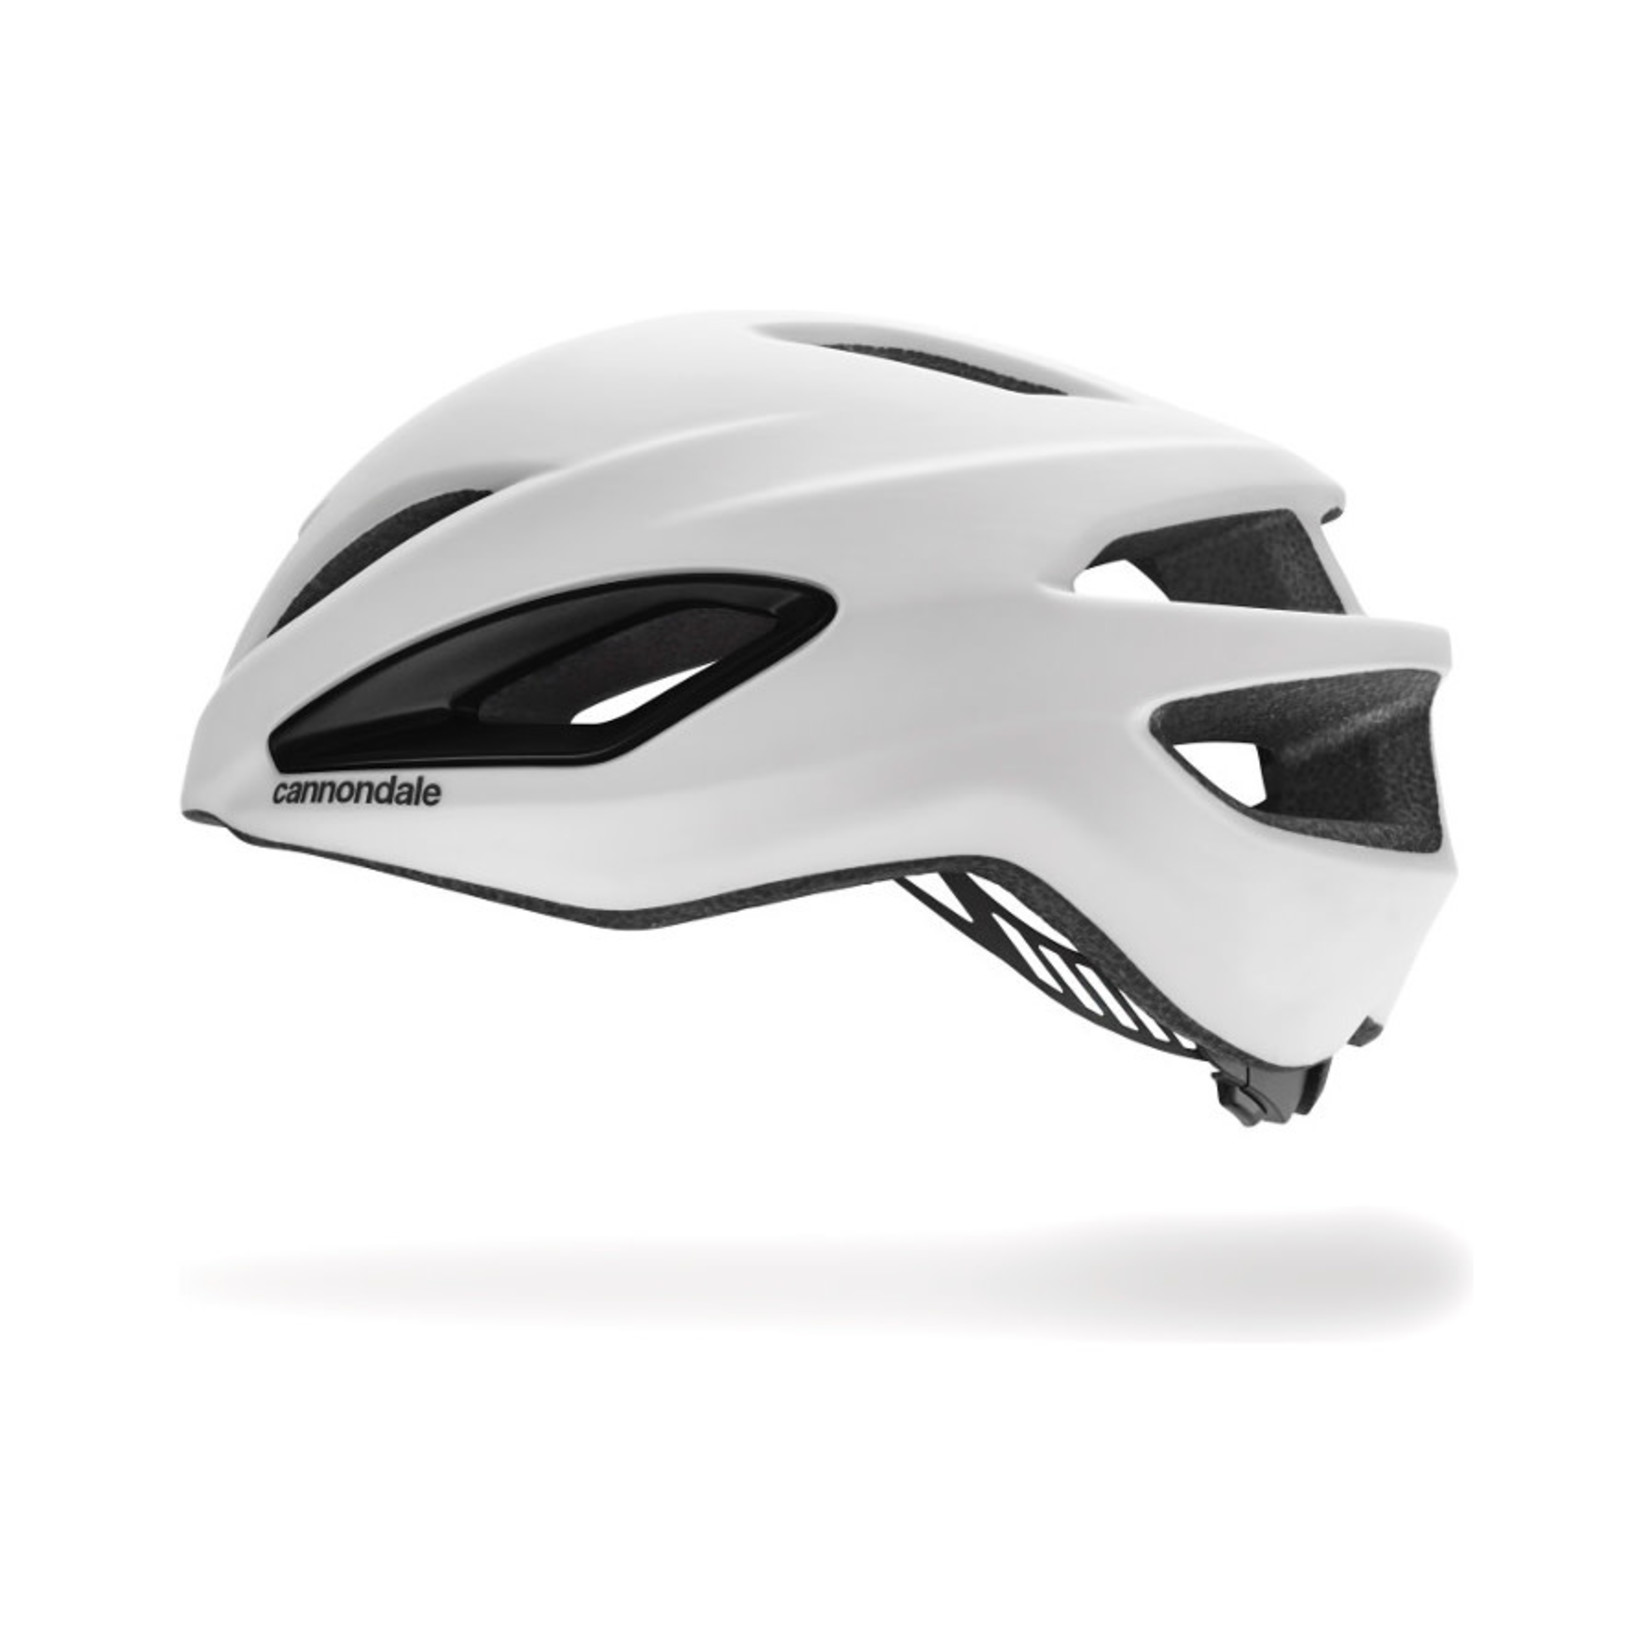 Cannondale Intake Adult Helmet